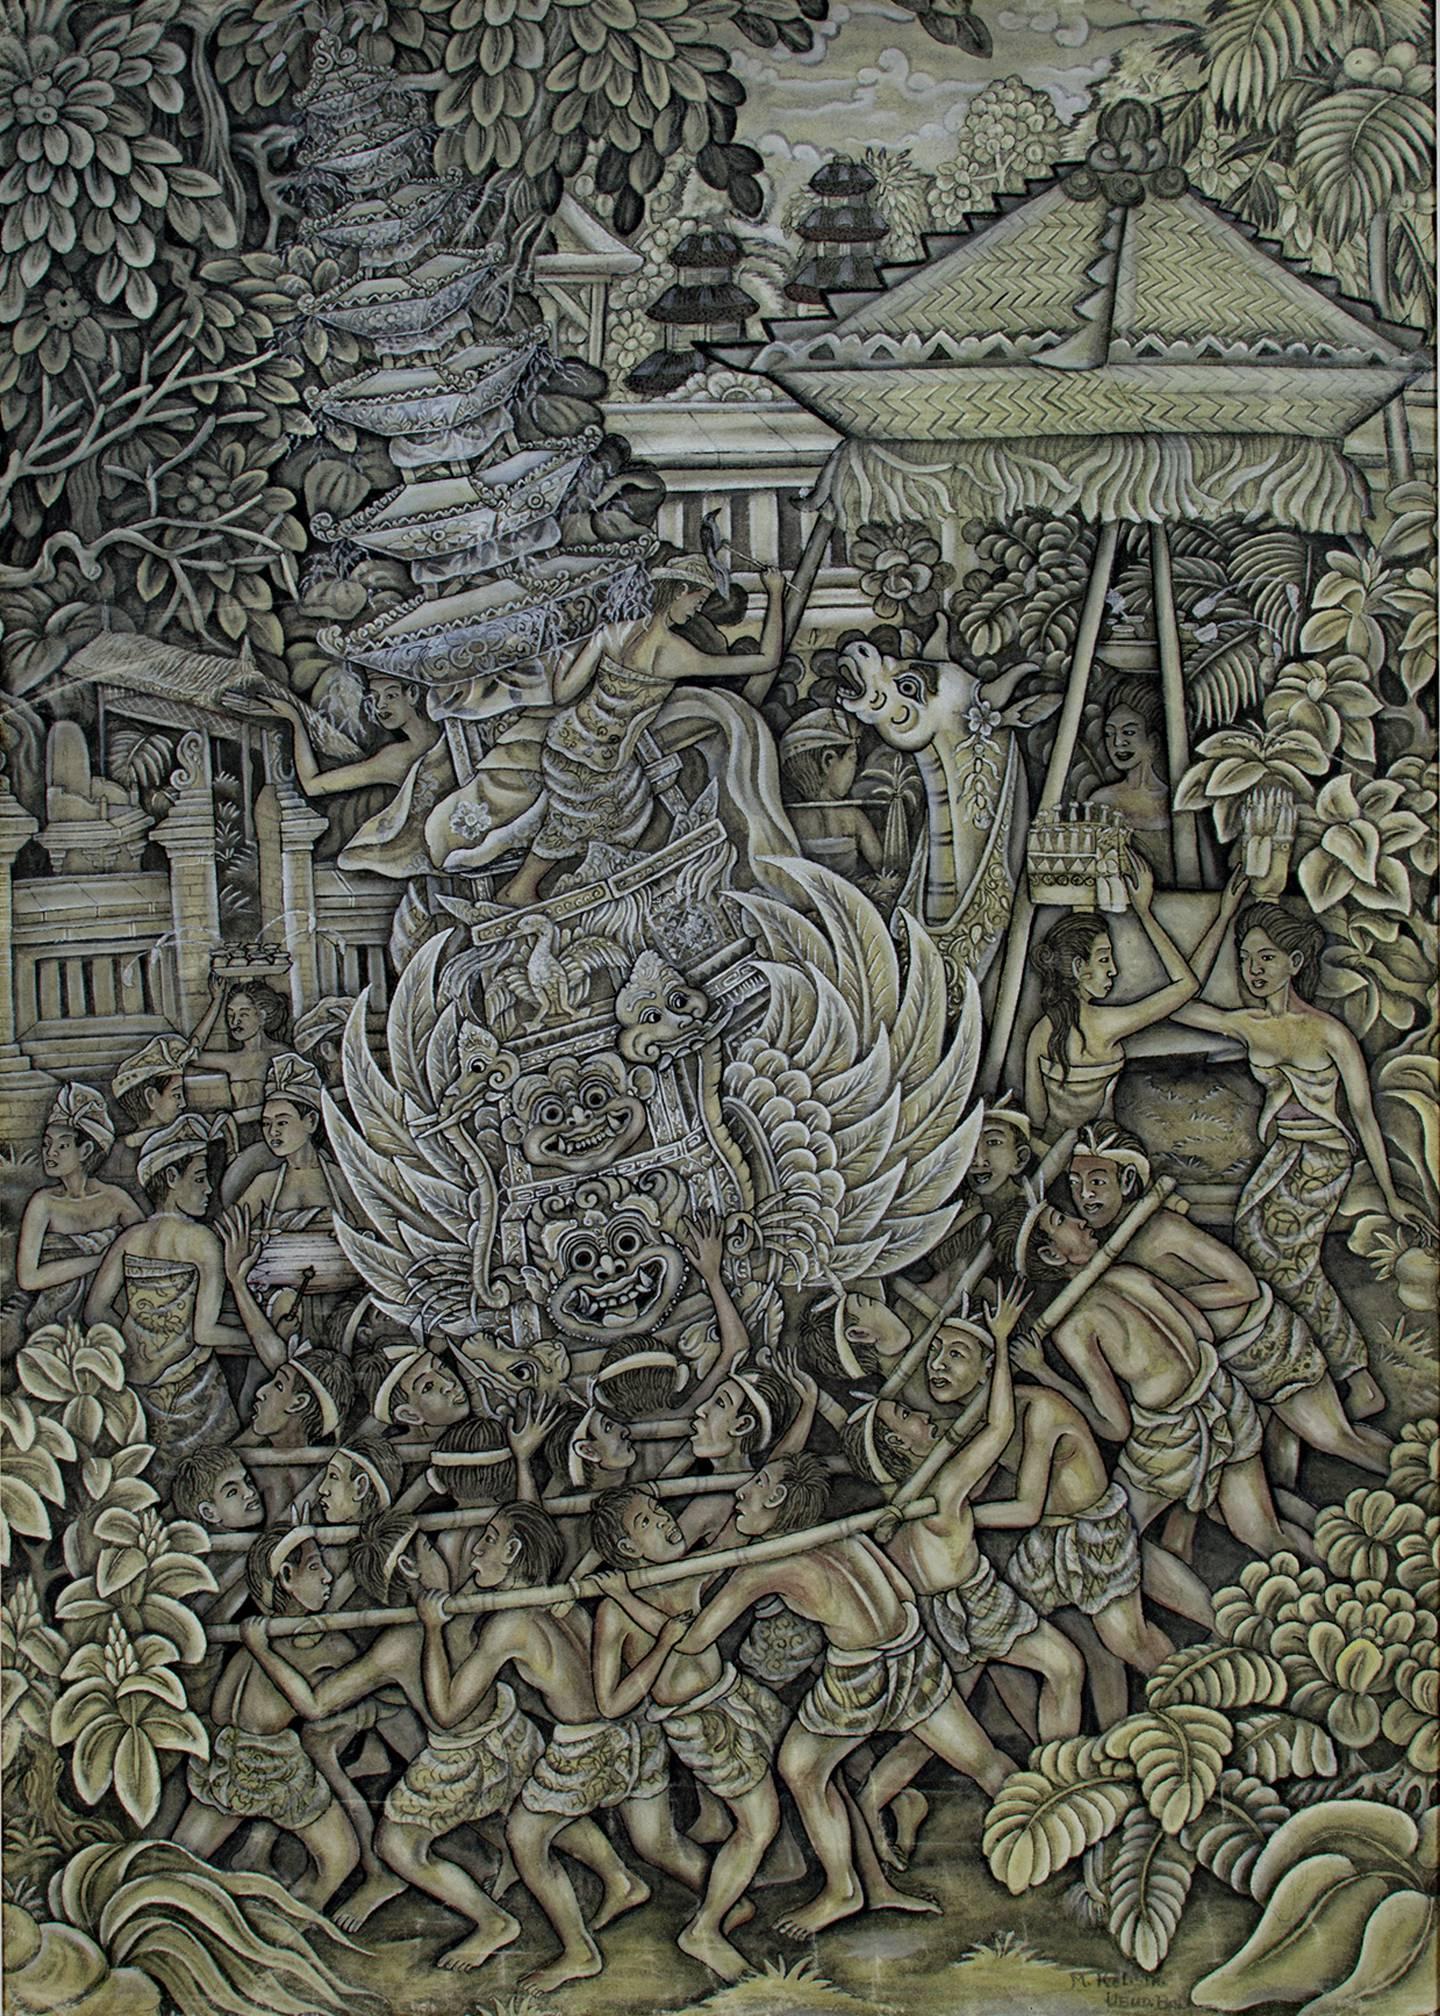 Figurative Painting Unknown - Peinture à l'huile sur toile « Royal Cremation Ceremony Ubud Bali » créée en Indonésie